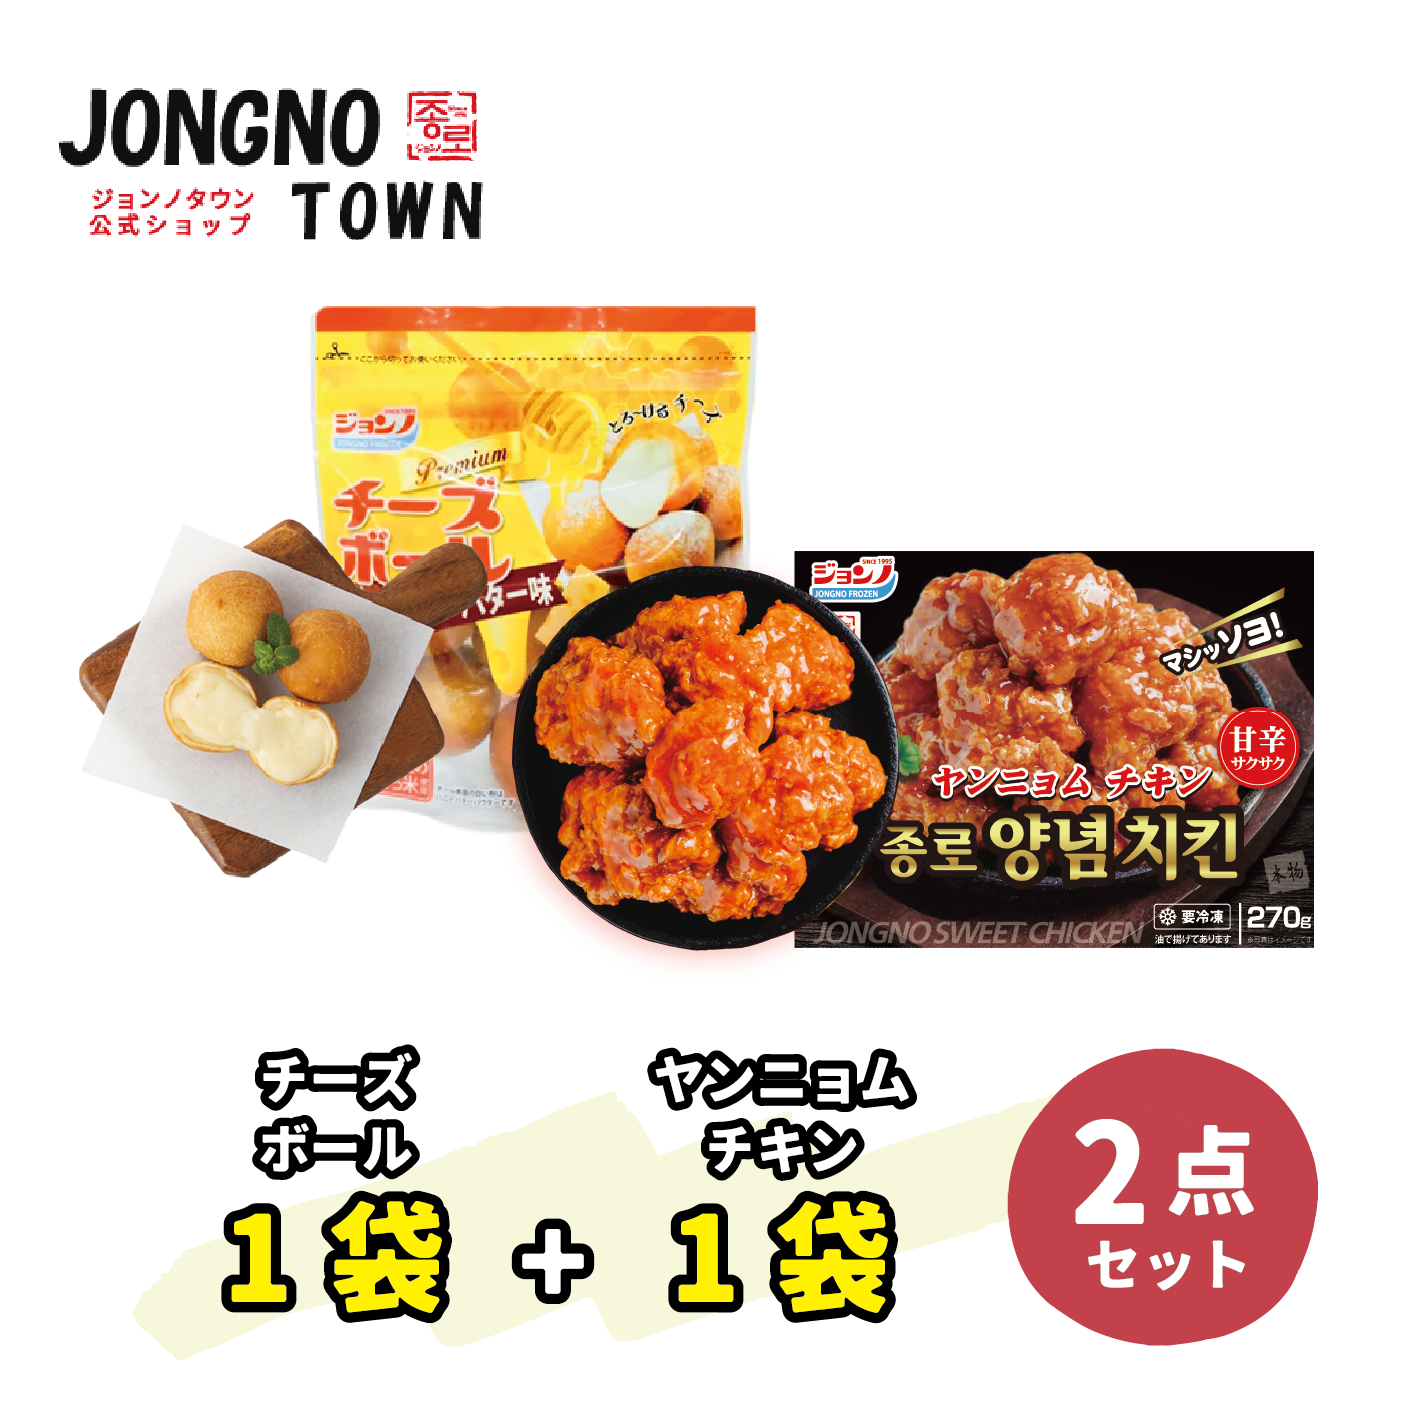 【チキンセット】ヤンニョムチキン1枚 / チーズボール1枚（ハニーバター味）  / 新大久保 / 韓国商品